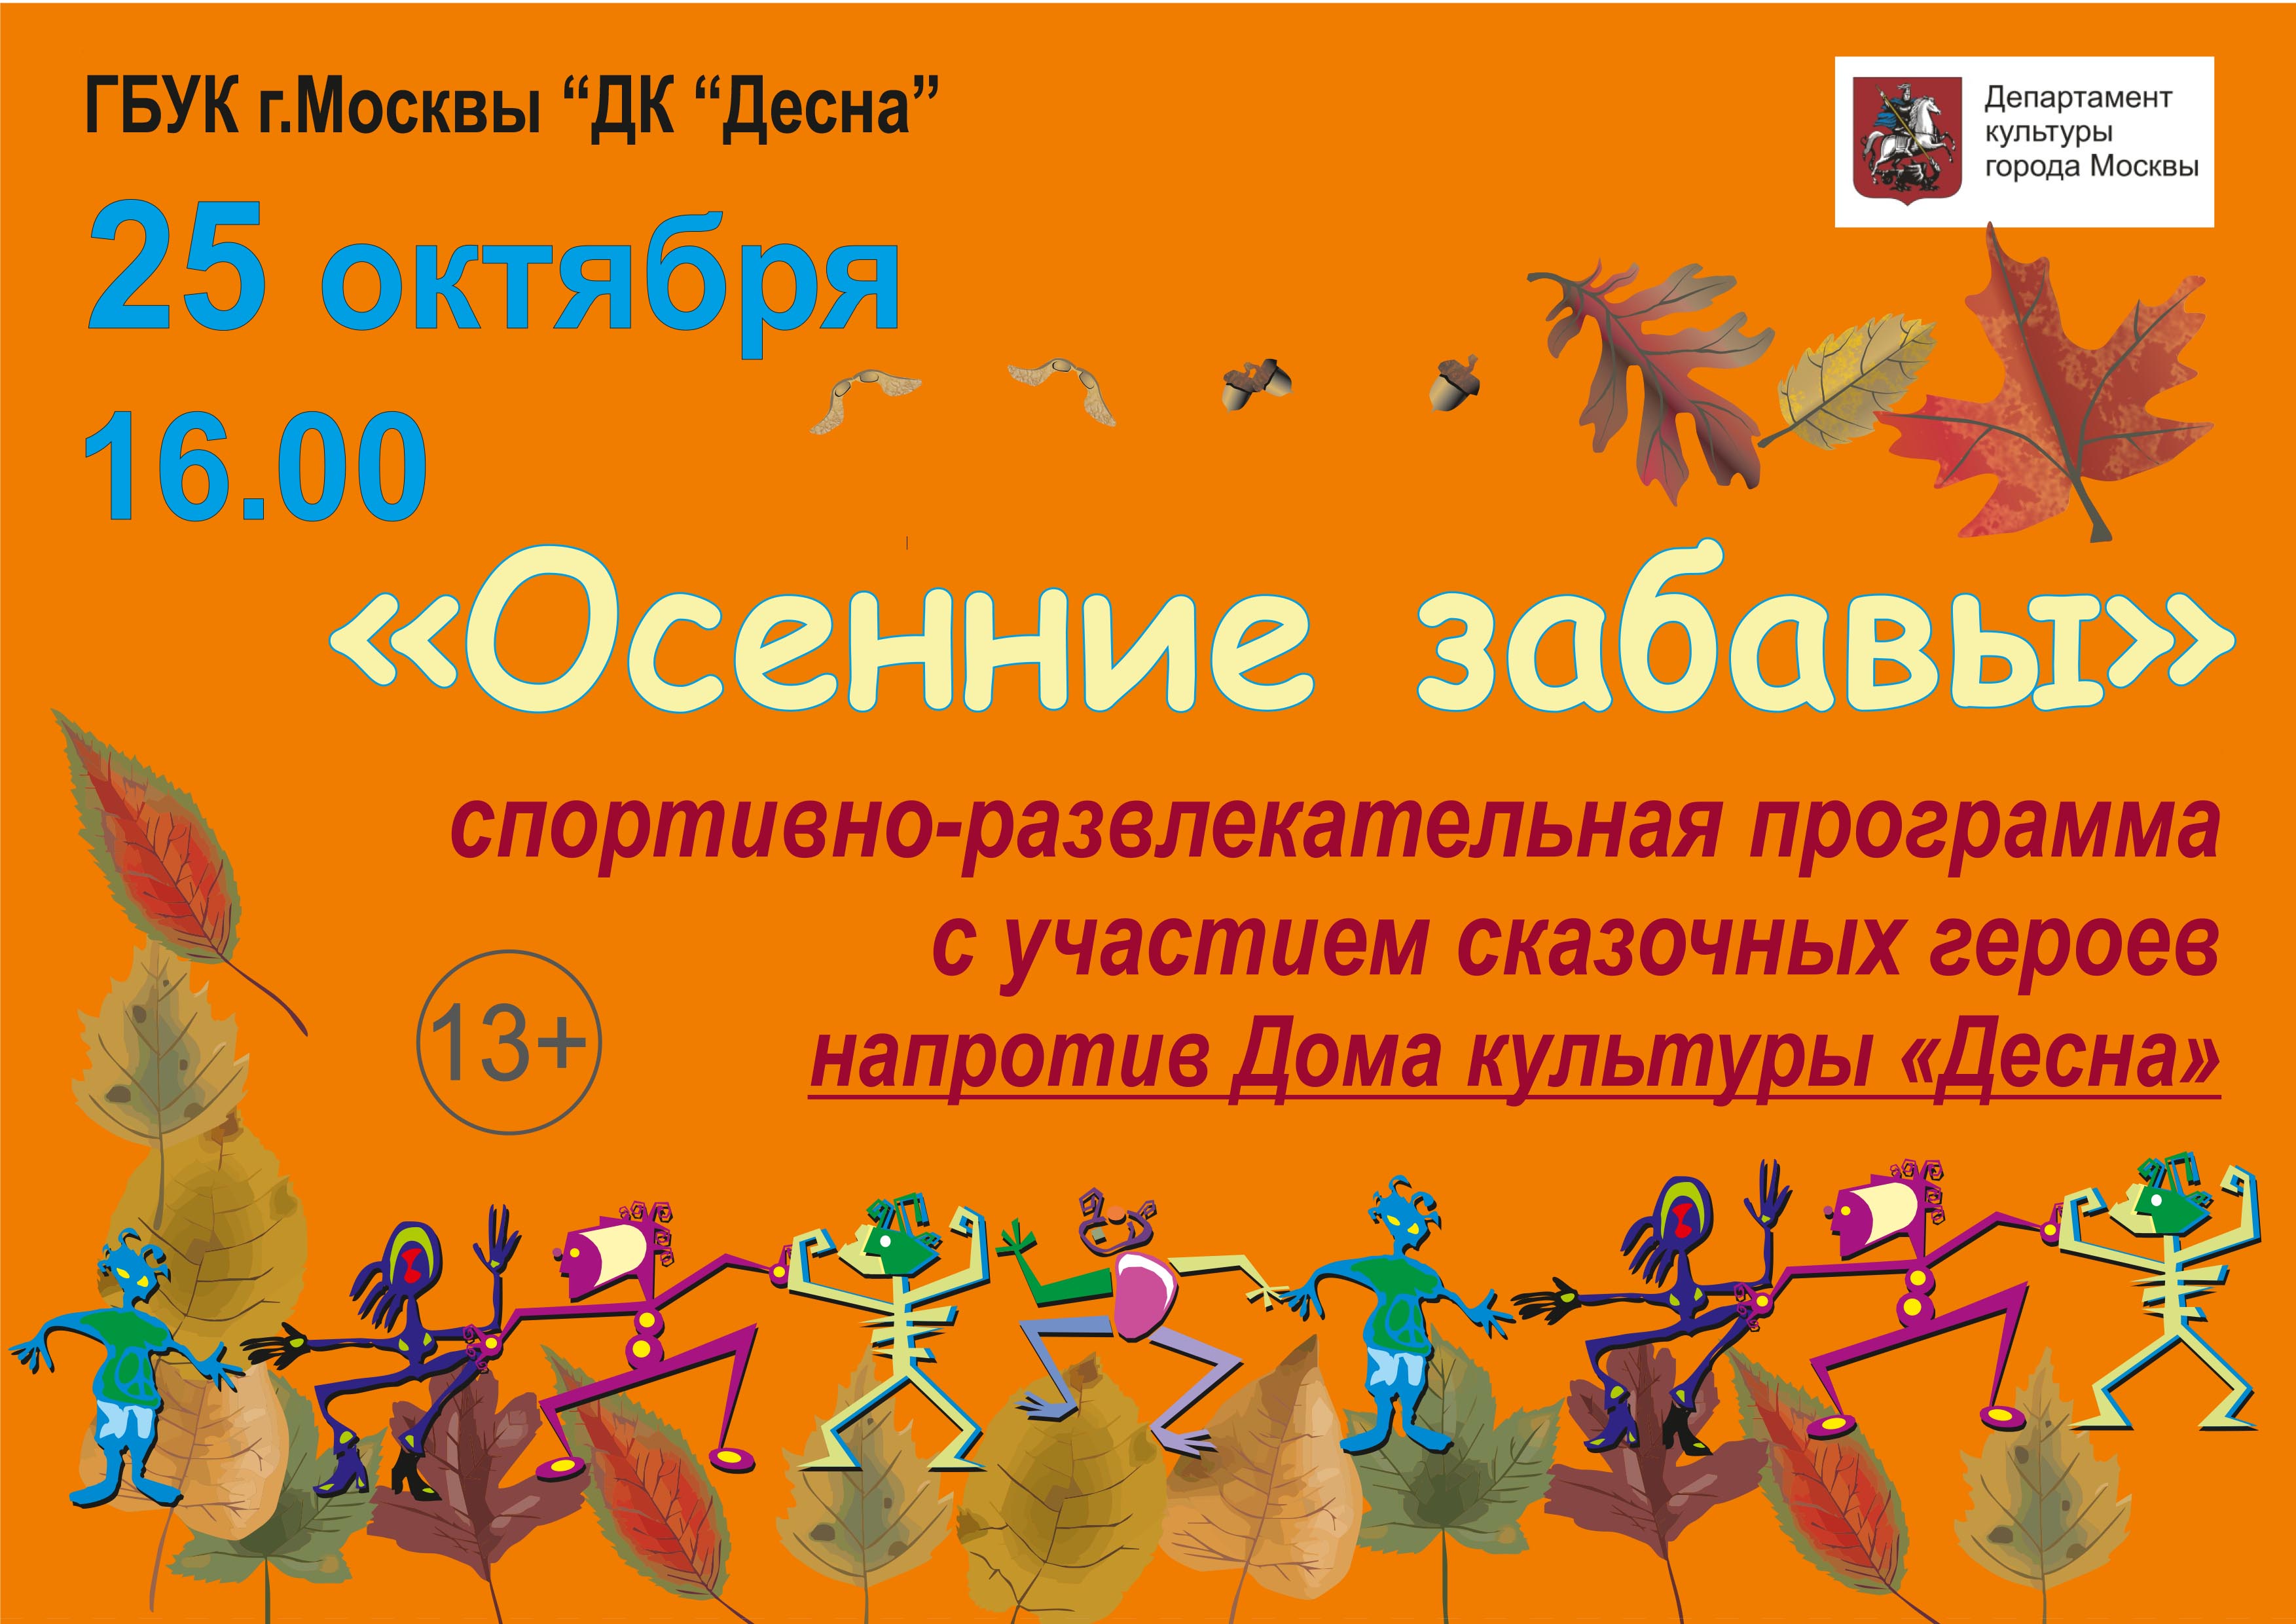 25 октября в ГБУК г. Москвы "ДК "Десна" пройдет спортивно-развлекательная программа для детей с участием сказочных героев "Осенние забавы"